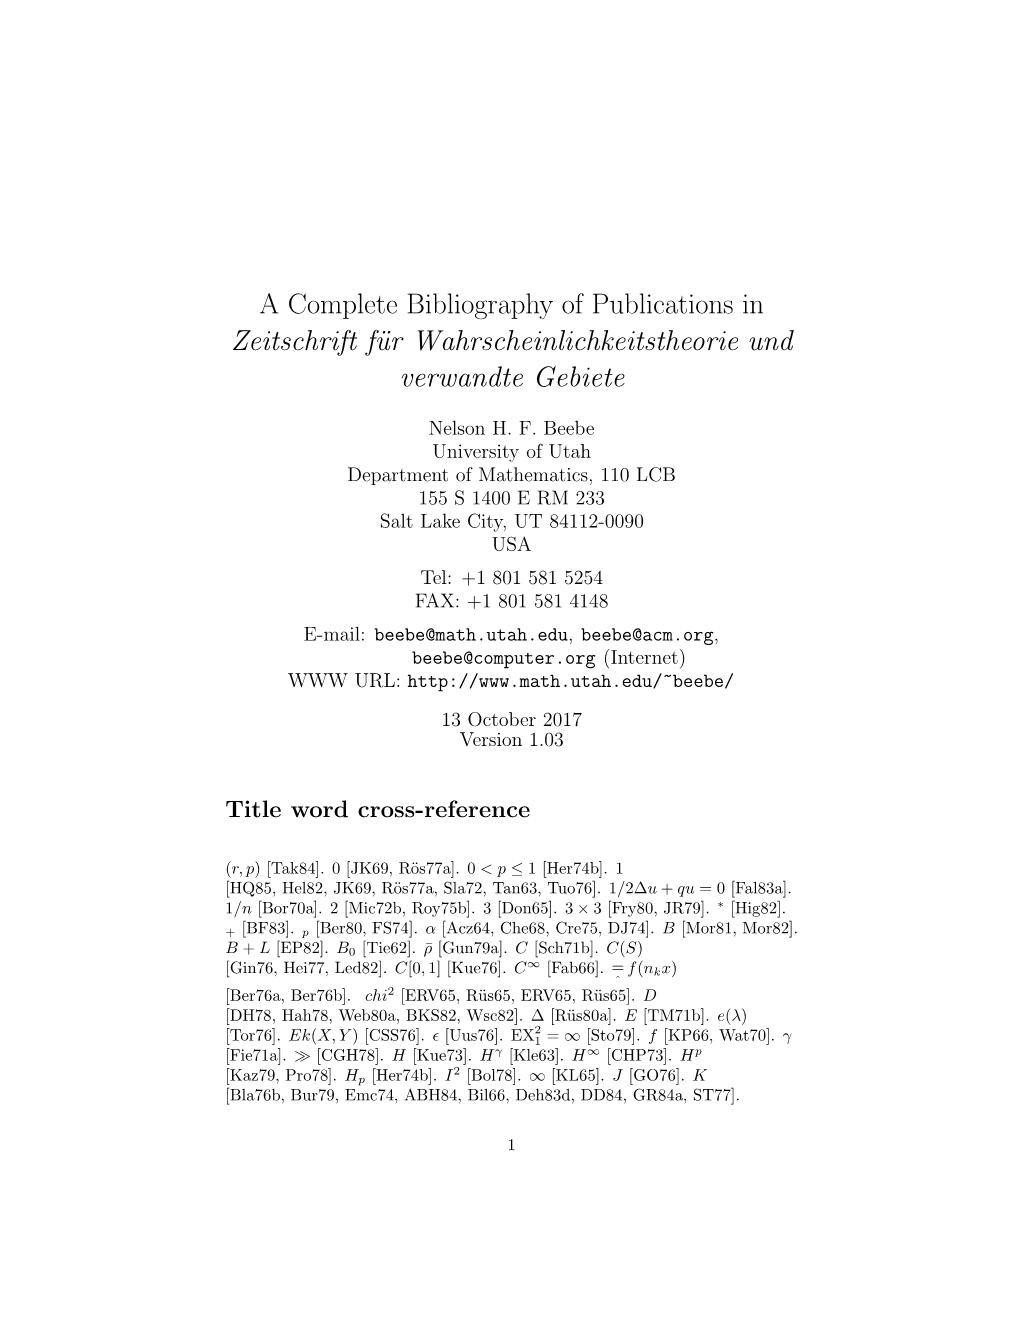 A Complete Bibliography of Publications in Zeitschrift Für Wahrscheinlichkeitstheorie Und Verwandte Gebiete